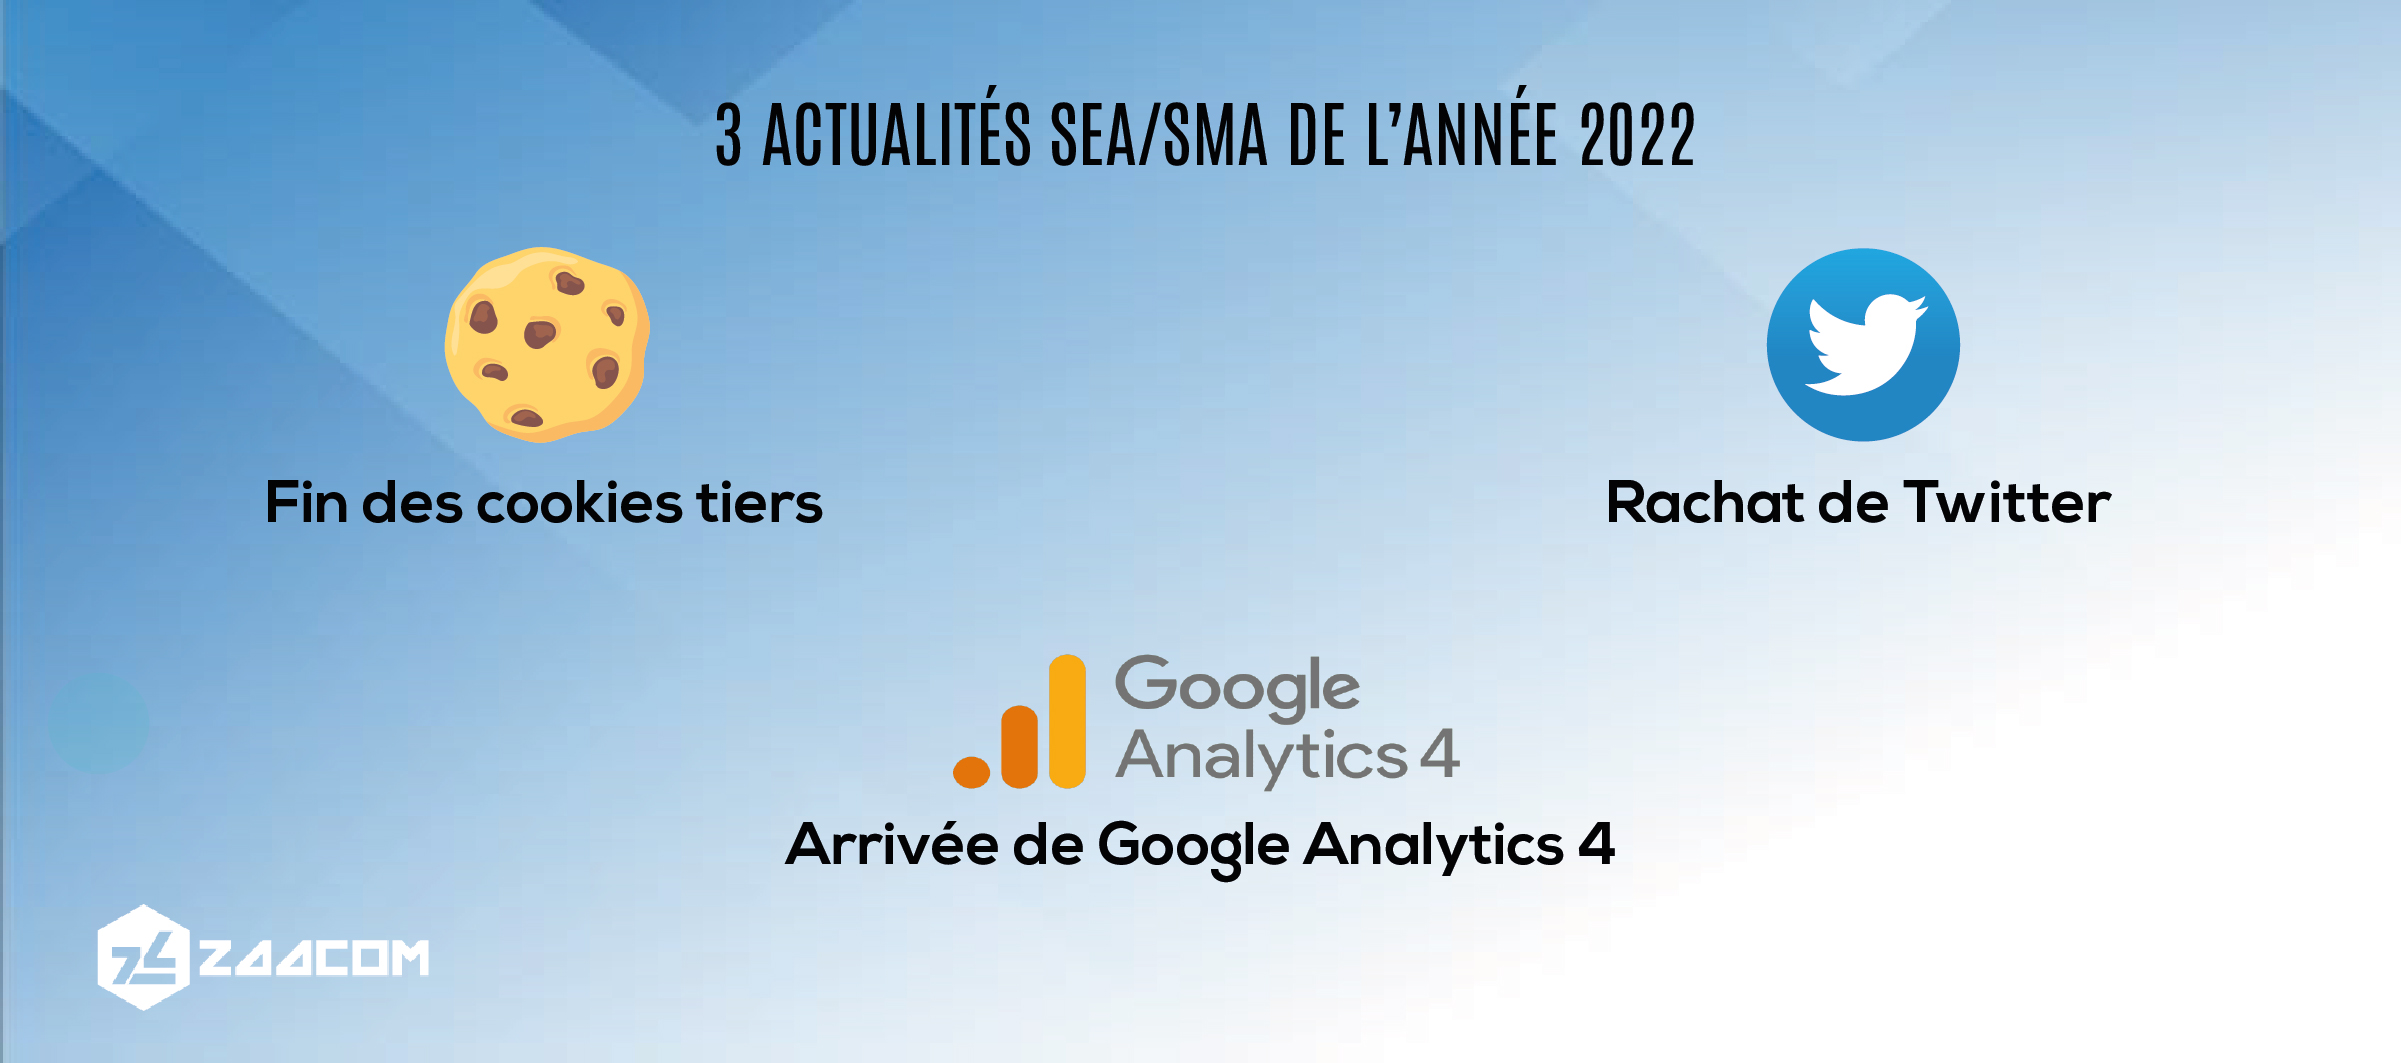 3-actualites-sea-sma-de-l-annee-2022